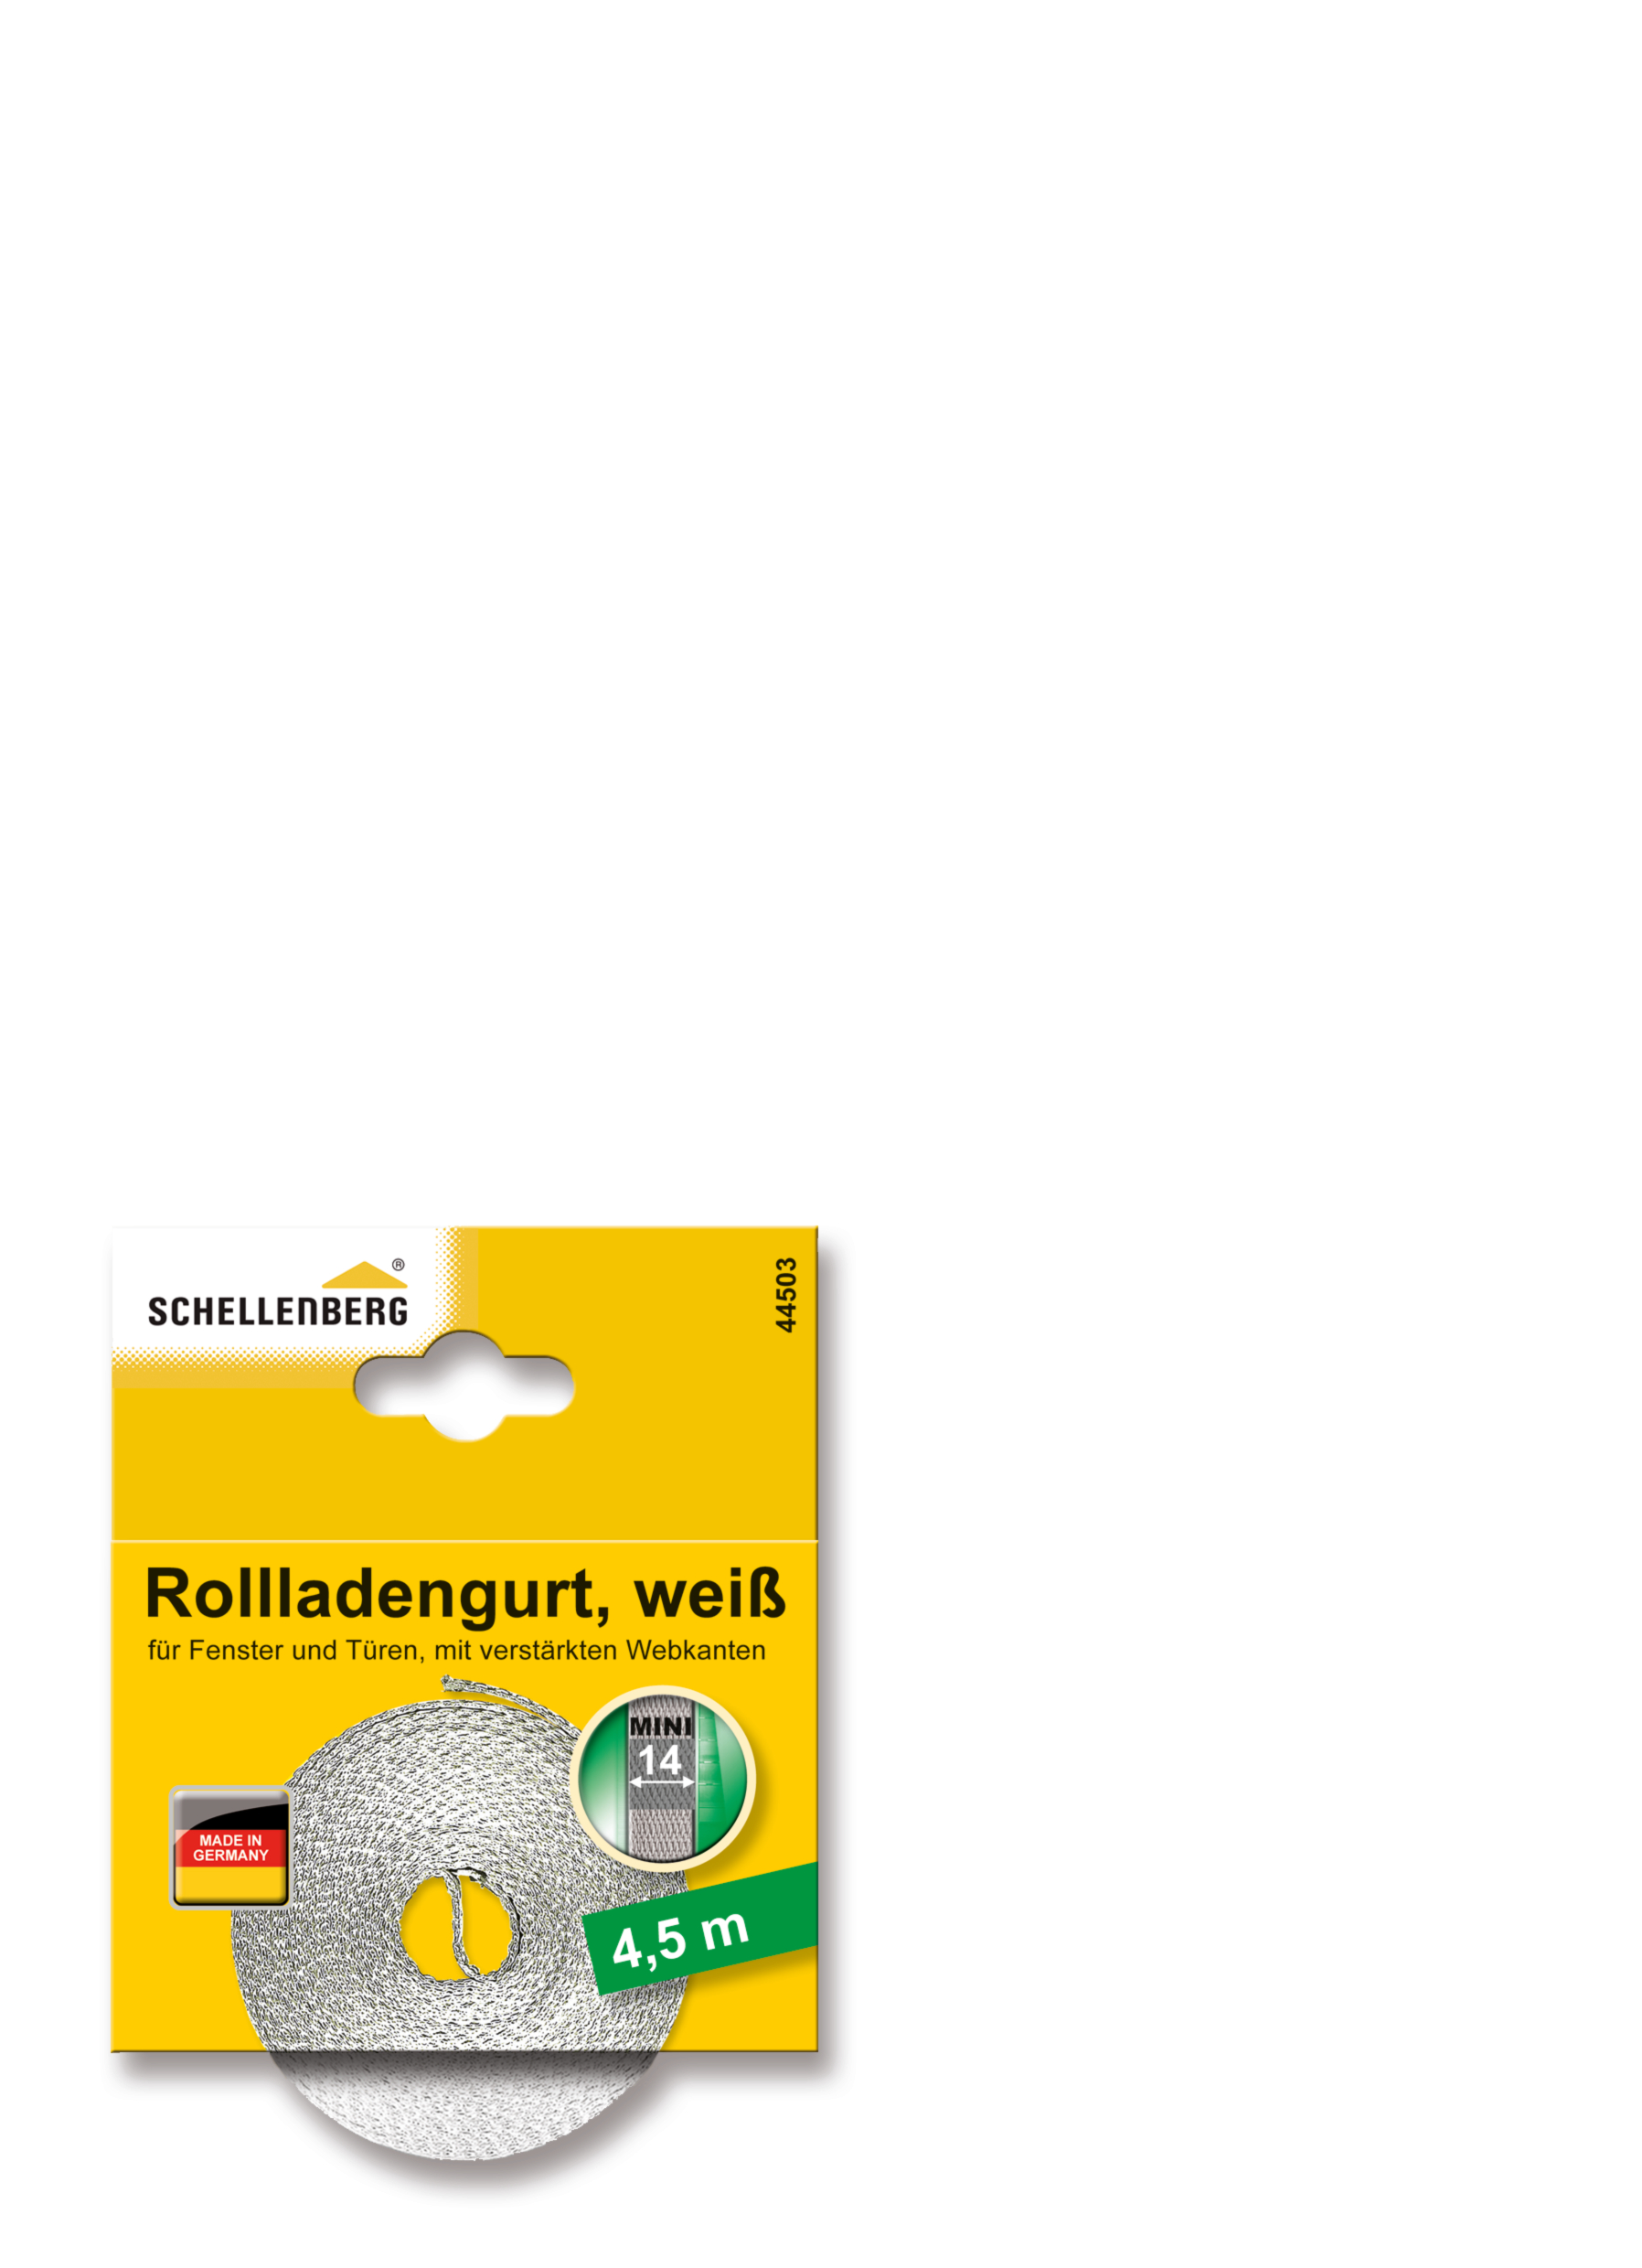 SCHELLENBERG Rollladengurt 14mm/4,5 m weiß 